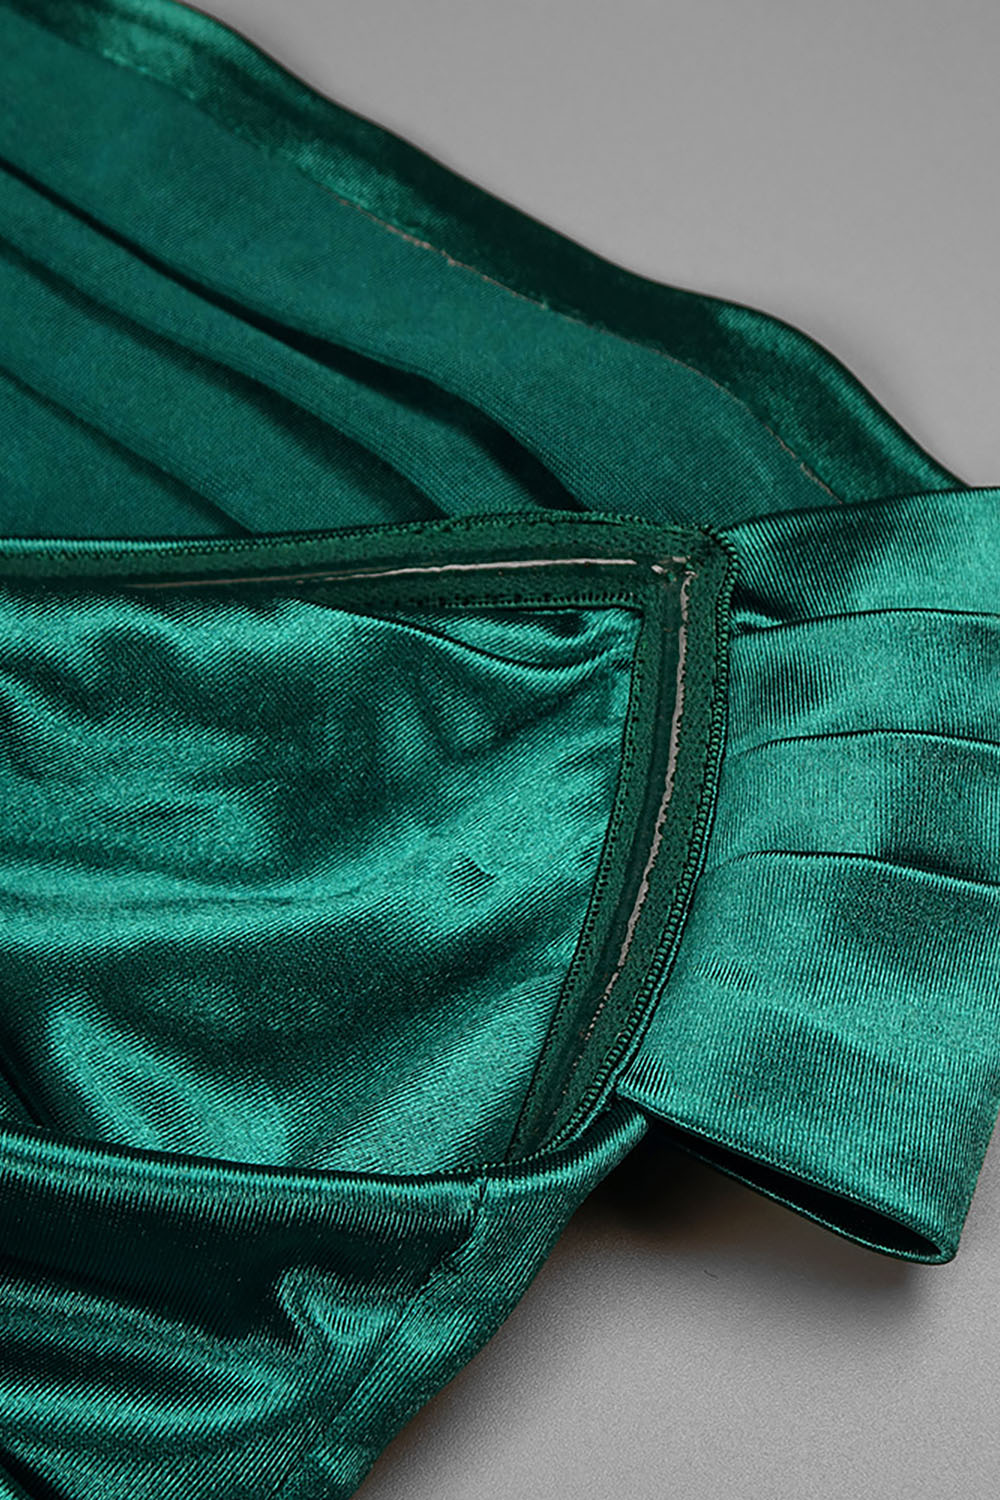 Vestido maxi verde sem alças drapeado com fenda